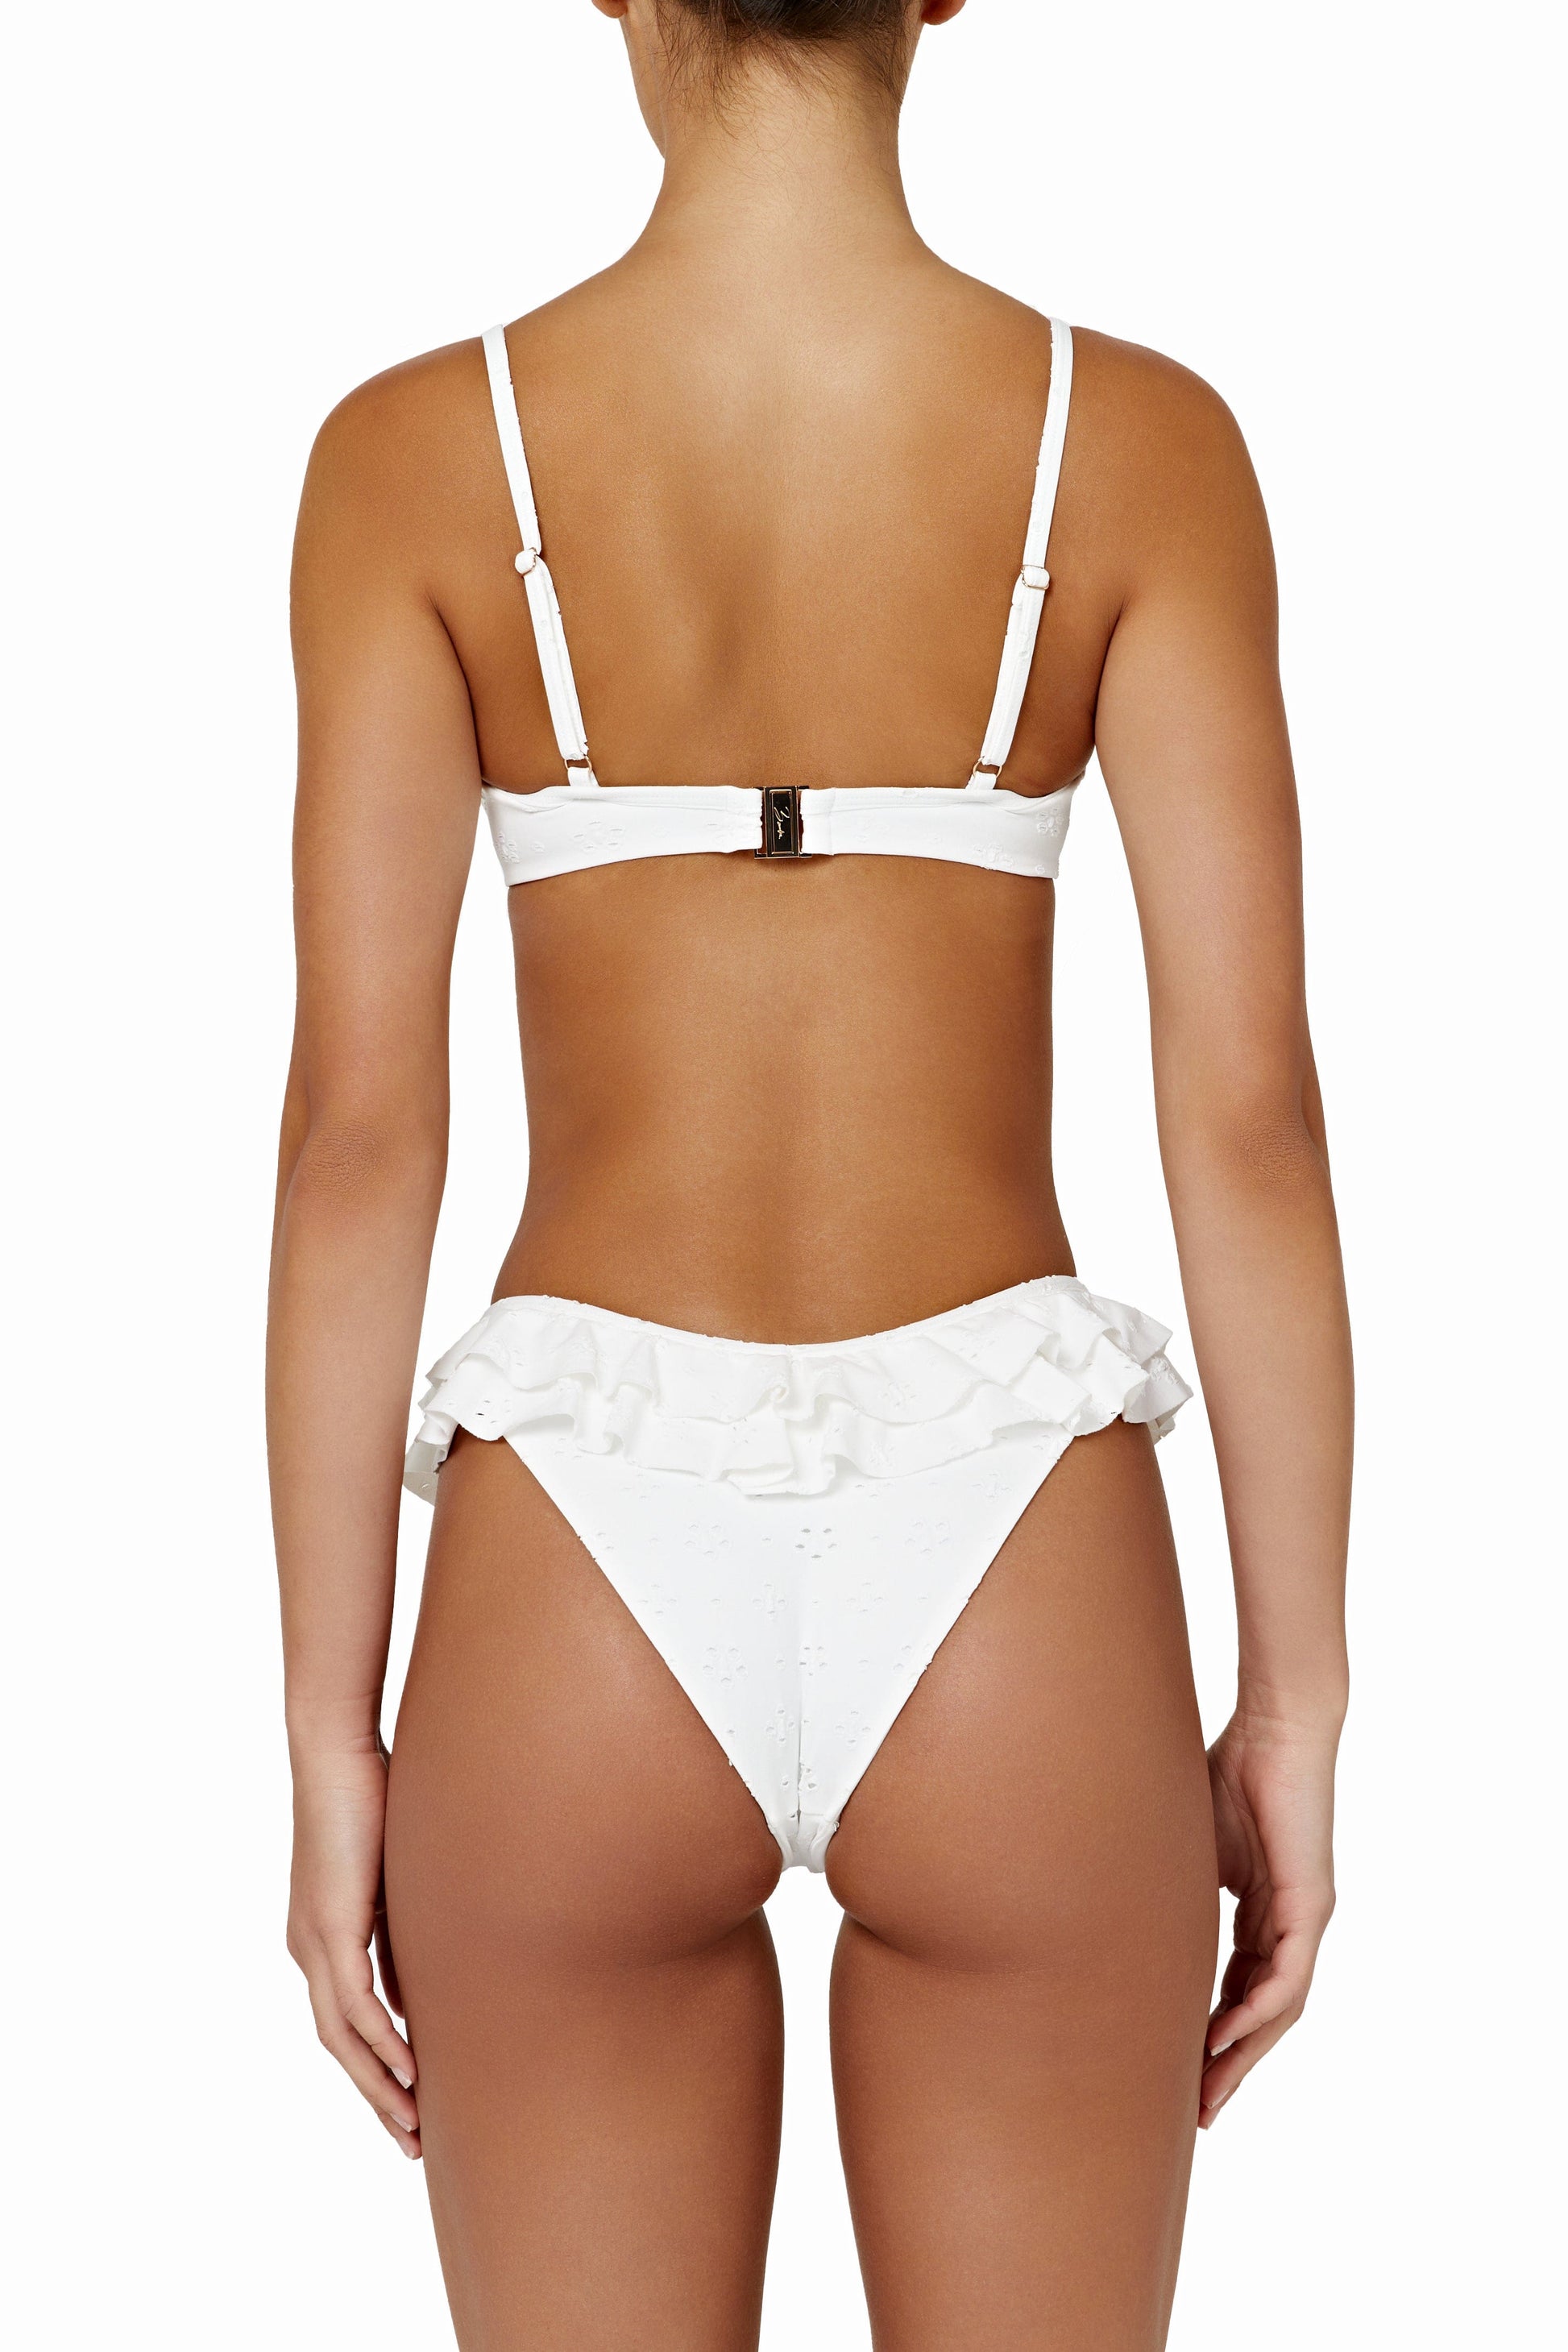 Ruffle Chic High Waist Suspender Bikini Set